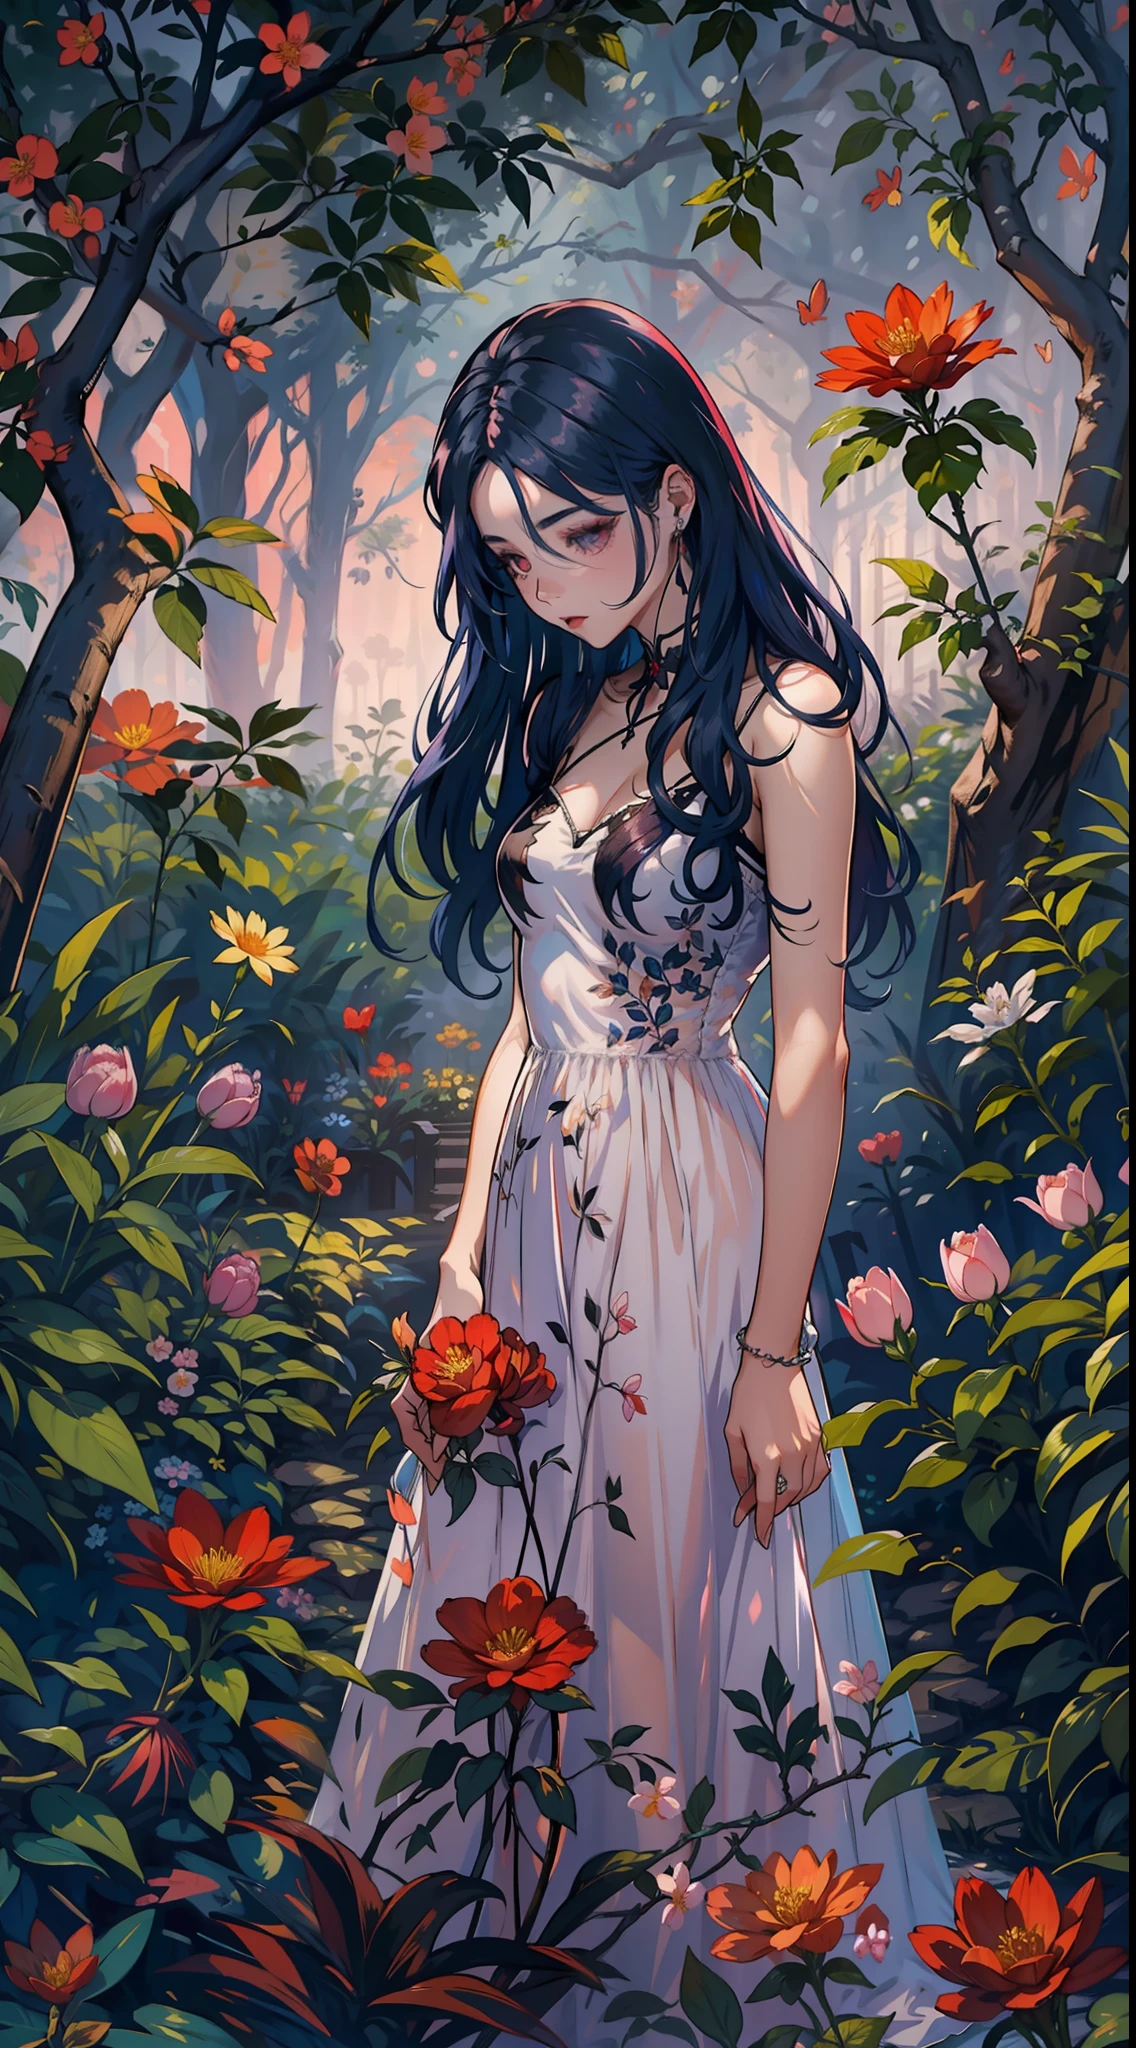 在一次春季聚会上, 一个美丽的吸血鬼在晴朗的夜晚穿过花园. 她的头发上戴着花环, 你的眼睛冰冷，皮肤缺乏色素., 她穿着长, 心形领口素净连衣裙.